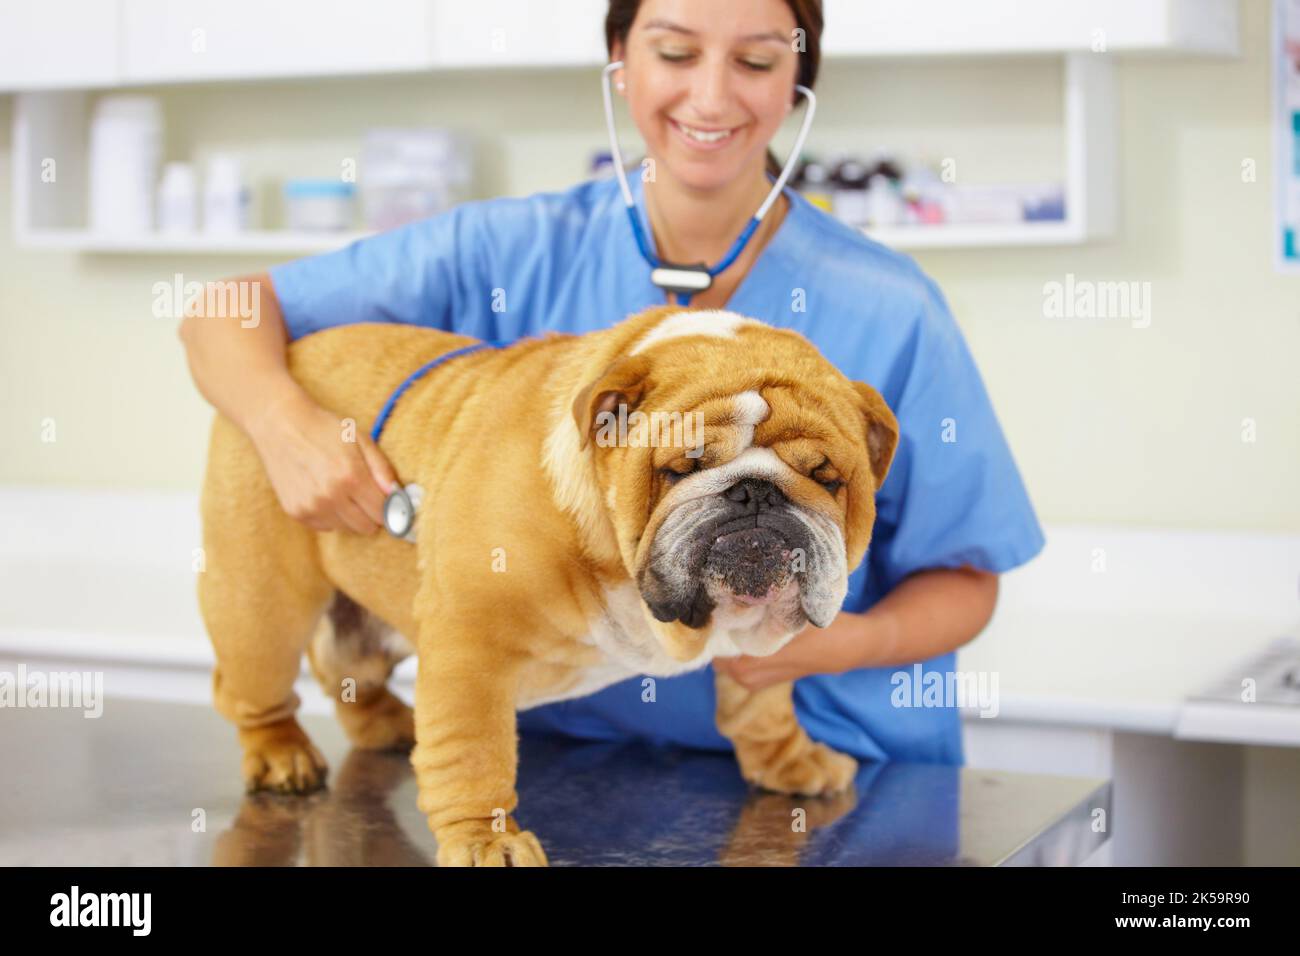 Starke und gesunde Bulldogge. Ein junger Tierarzt untersucht eine große Bulldogge, die auf einem Untersuchungstisch sitzt. Stockfoto